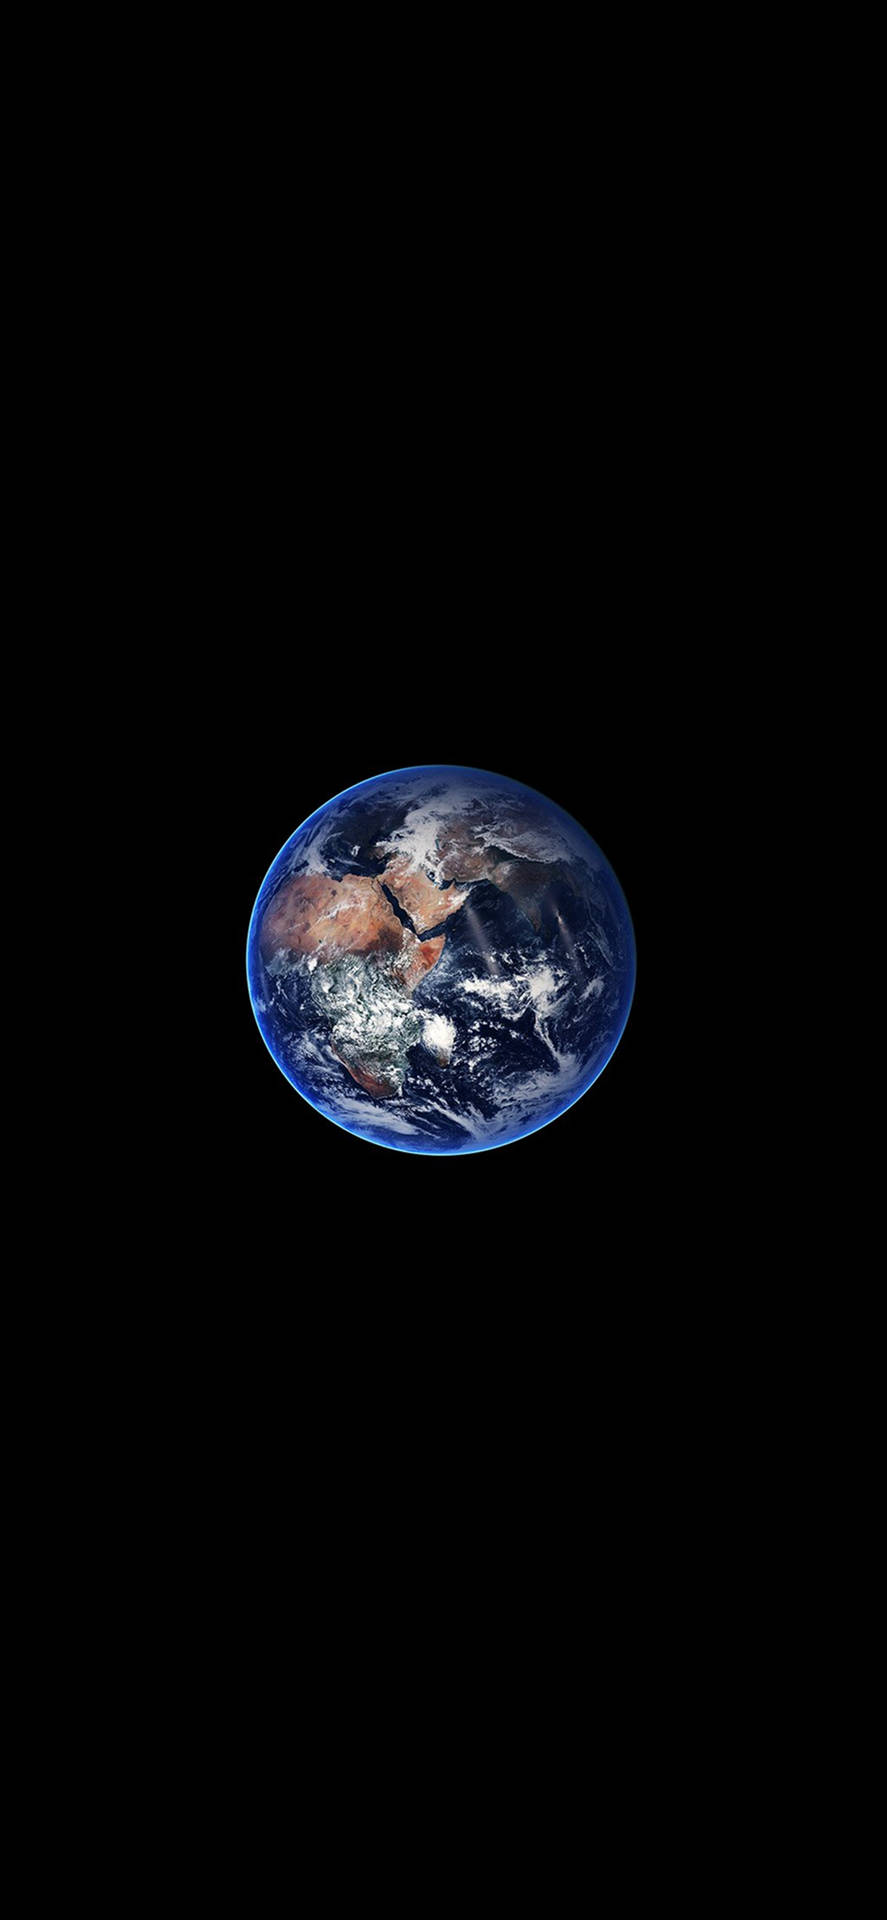 Impresionantefondo De Pantalla Minimalista Oscuro De La Tierra Para Iphone. Fondo de pantalla